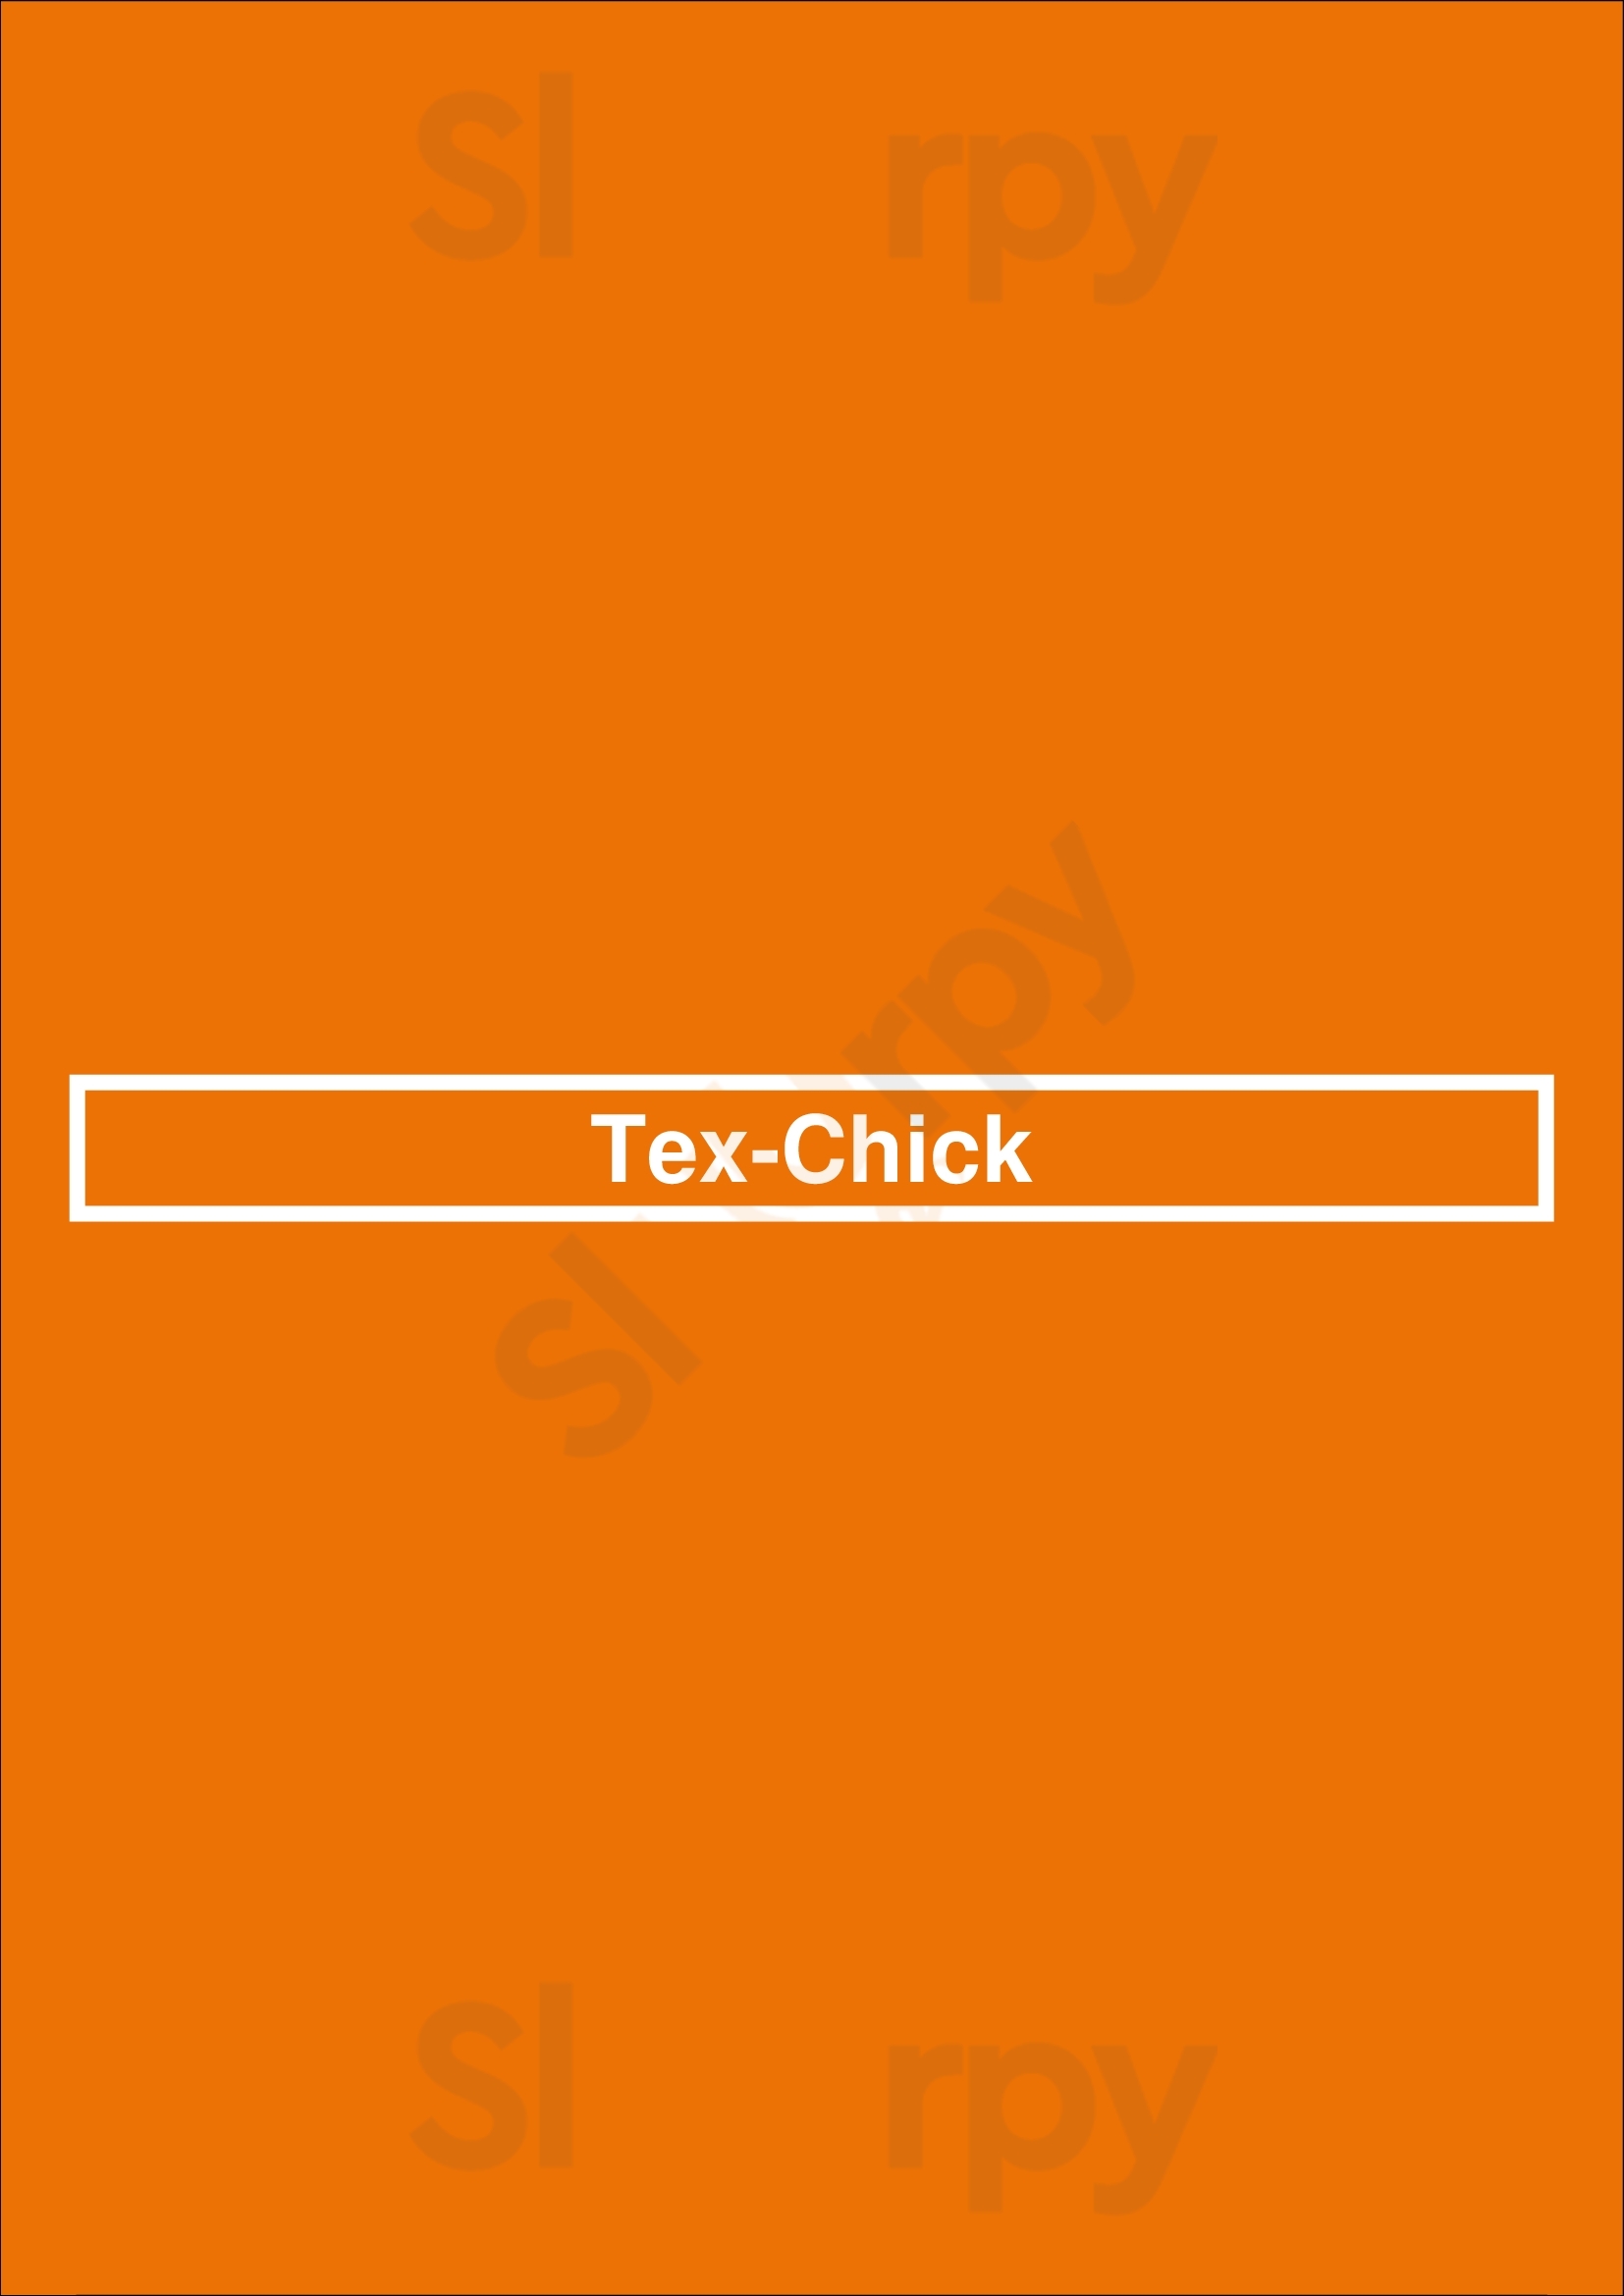 Tex-chick Houston Menu - 1